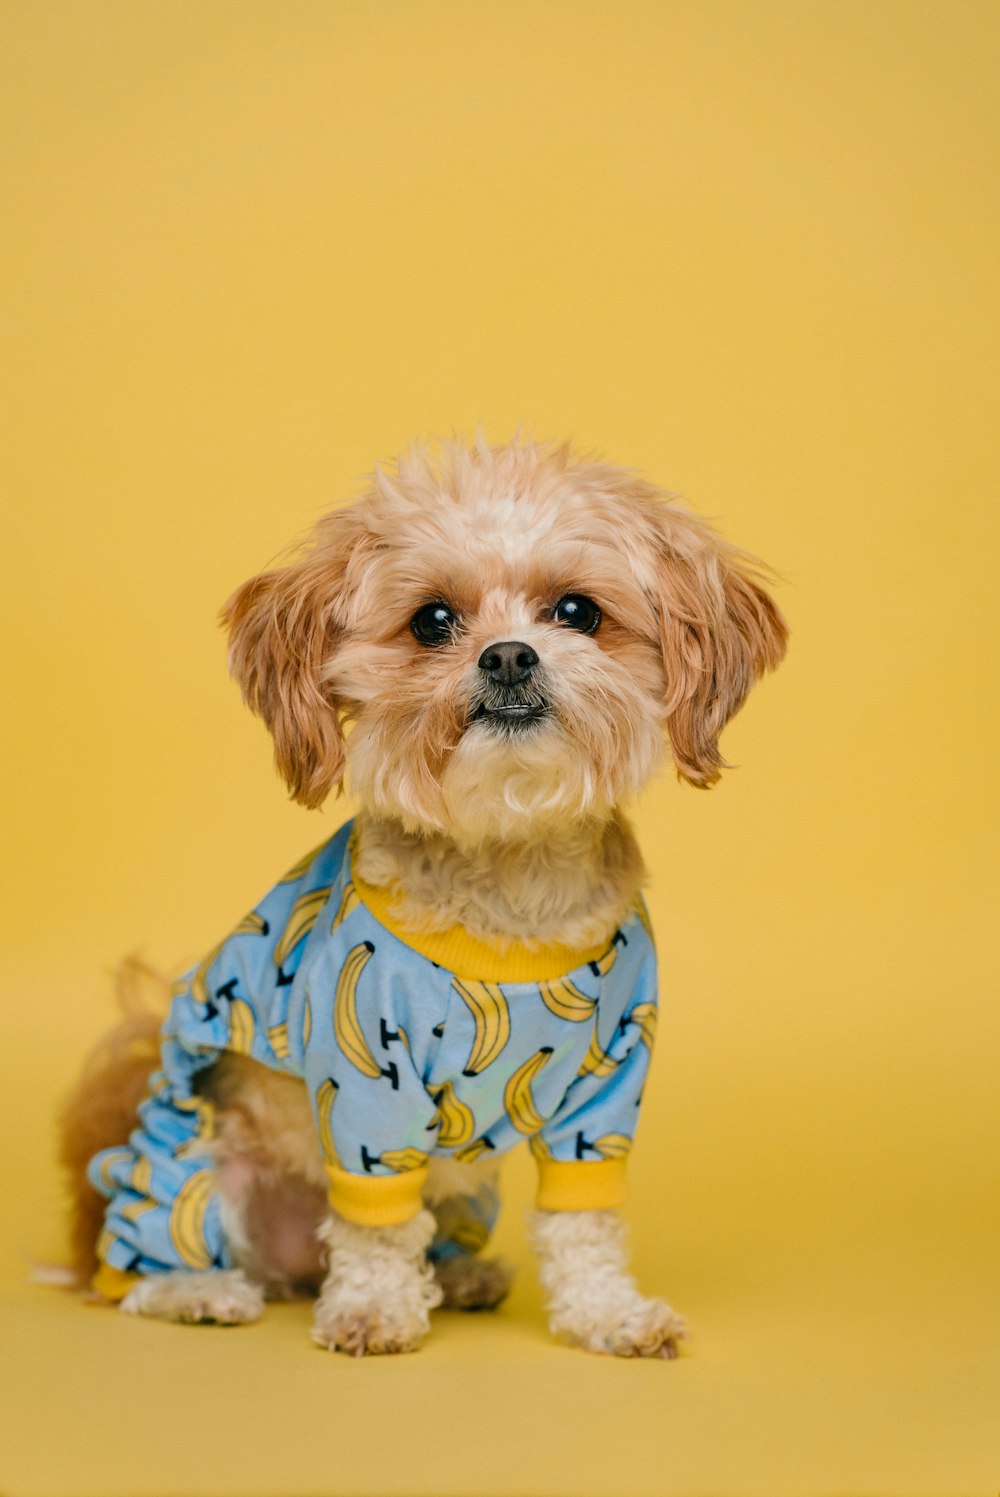 30k+ fotos de ropa para perros | Descargar imágenes gratis en Unsplash